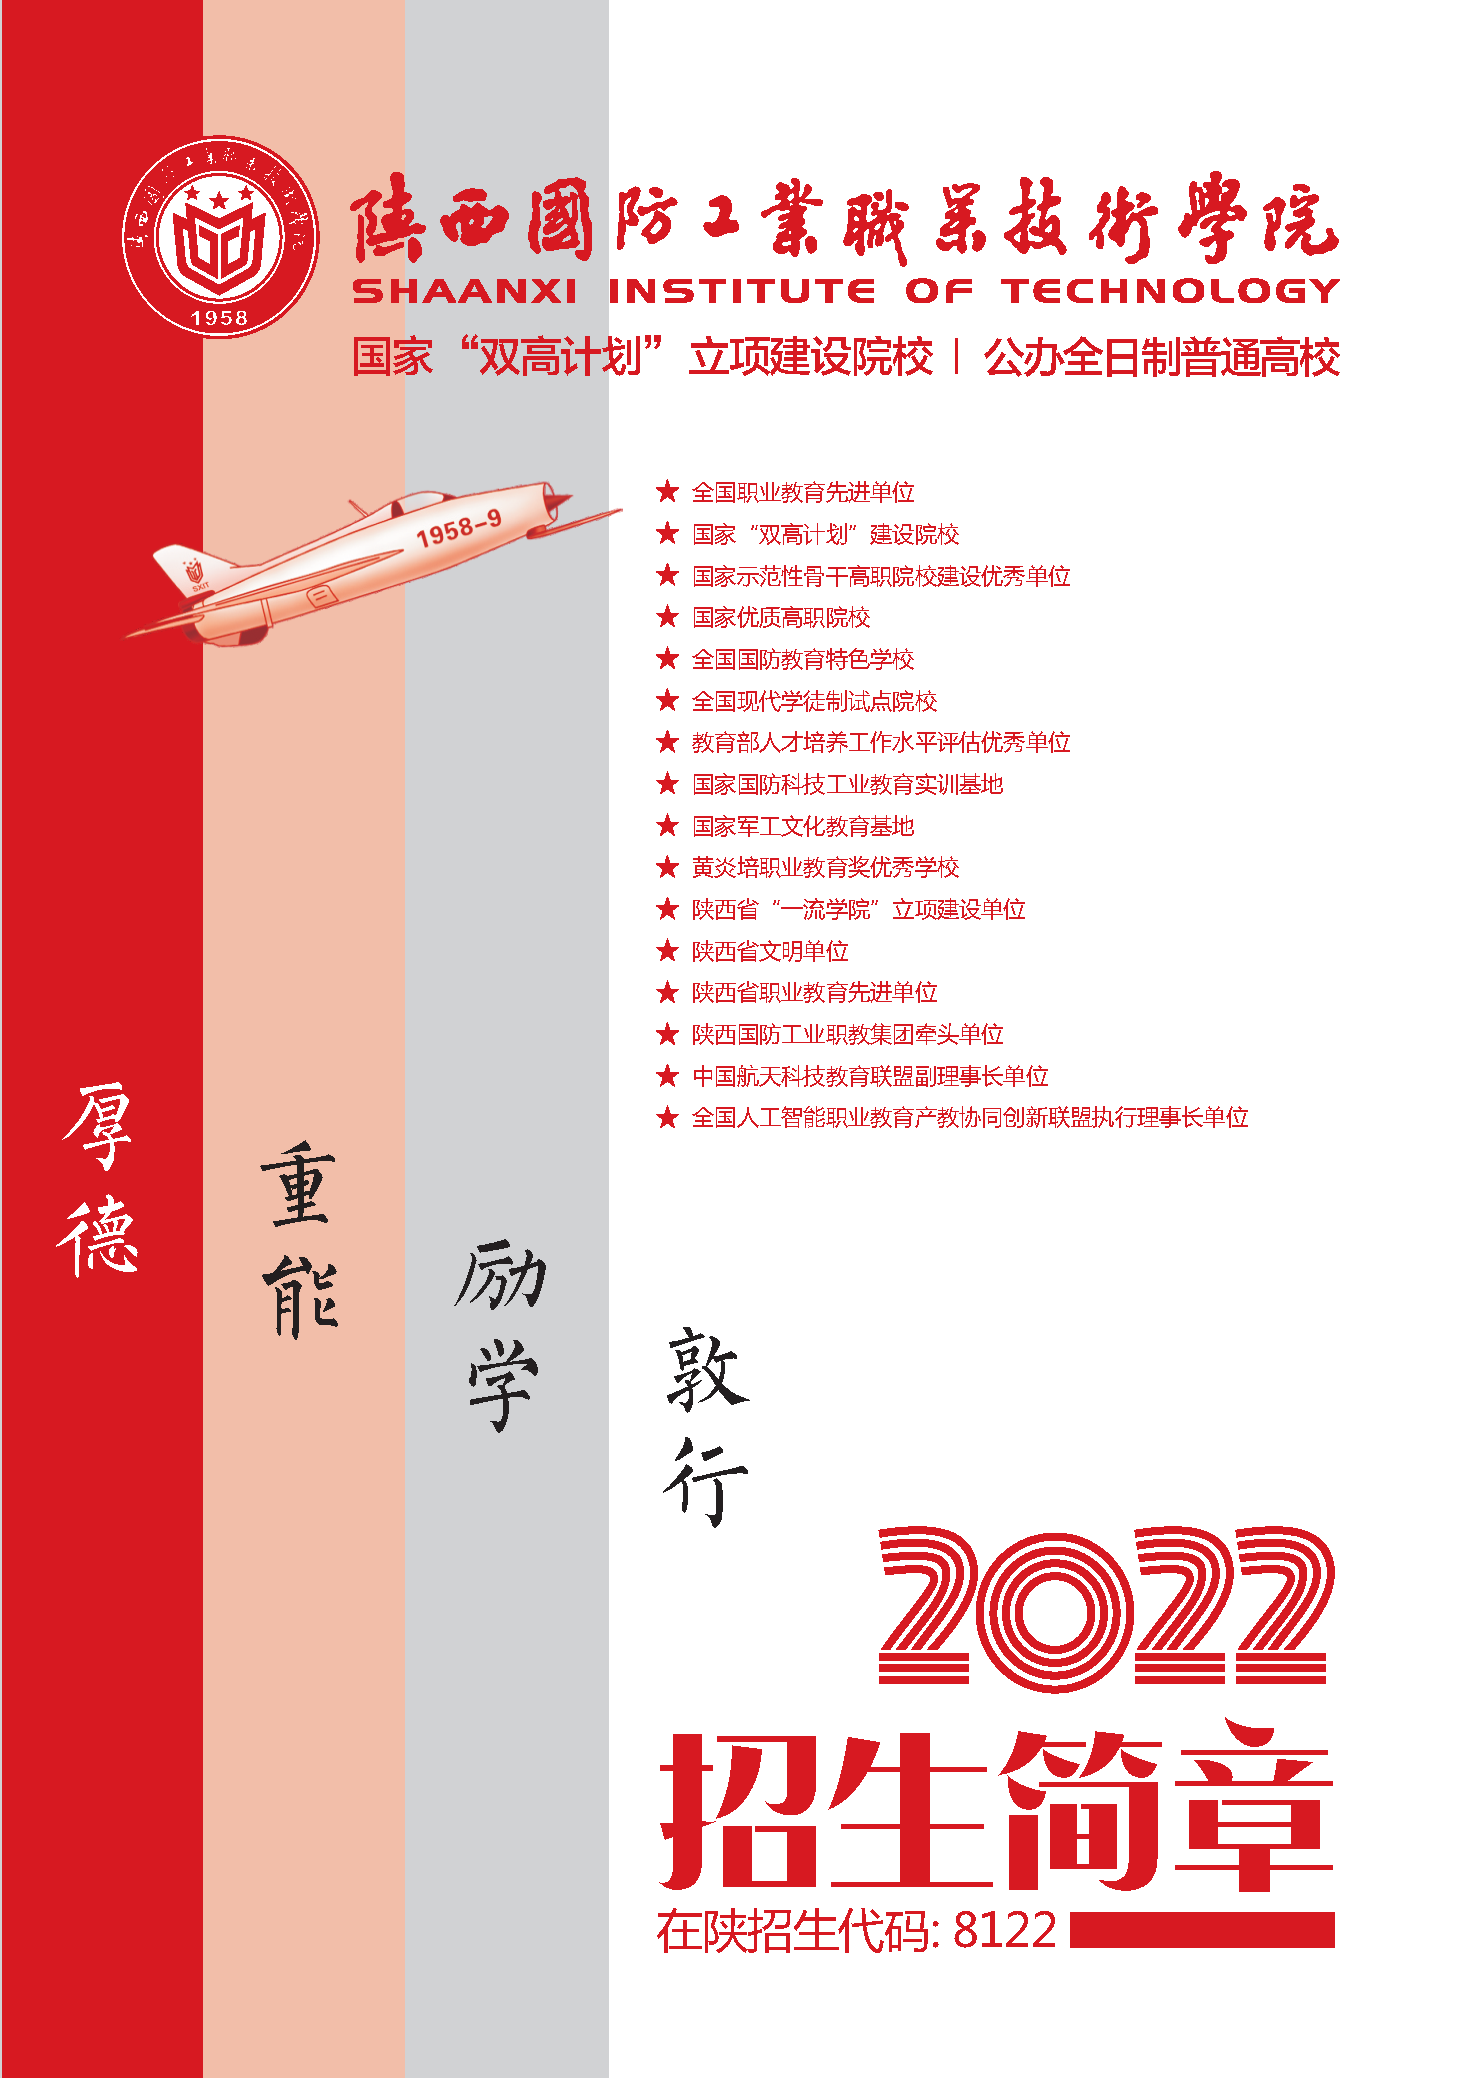 2022年陕西国防工业职业技术学院单招简章